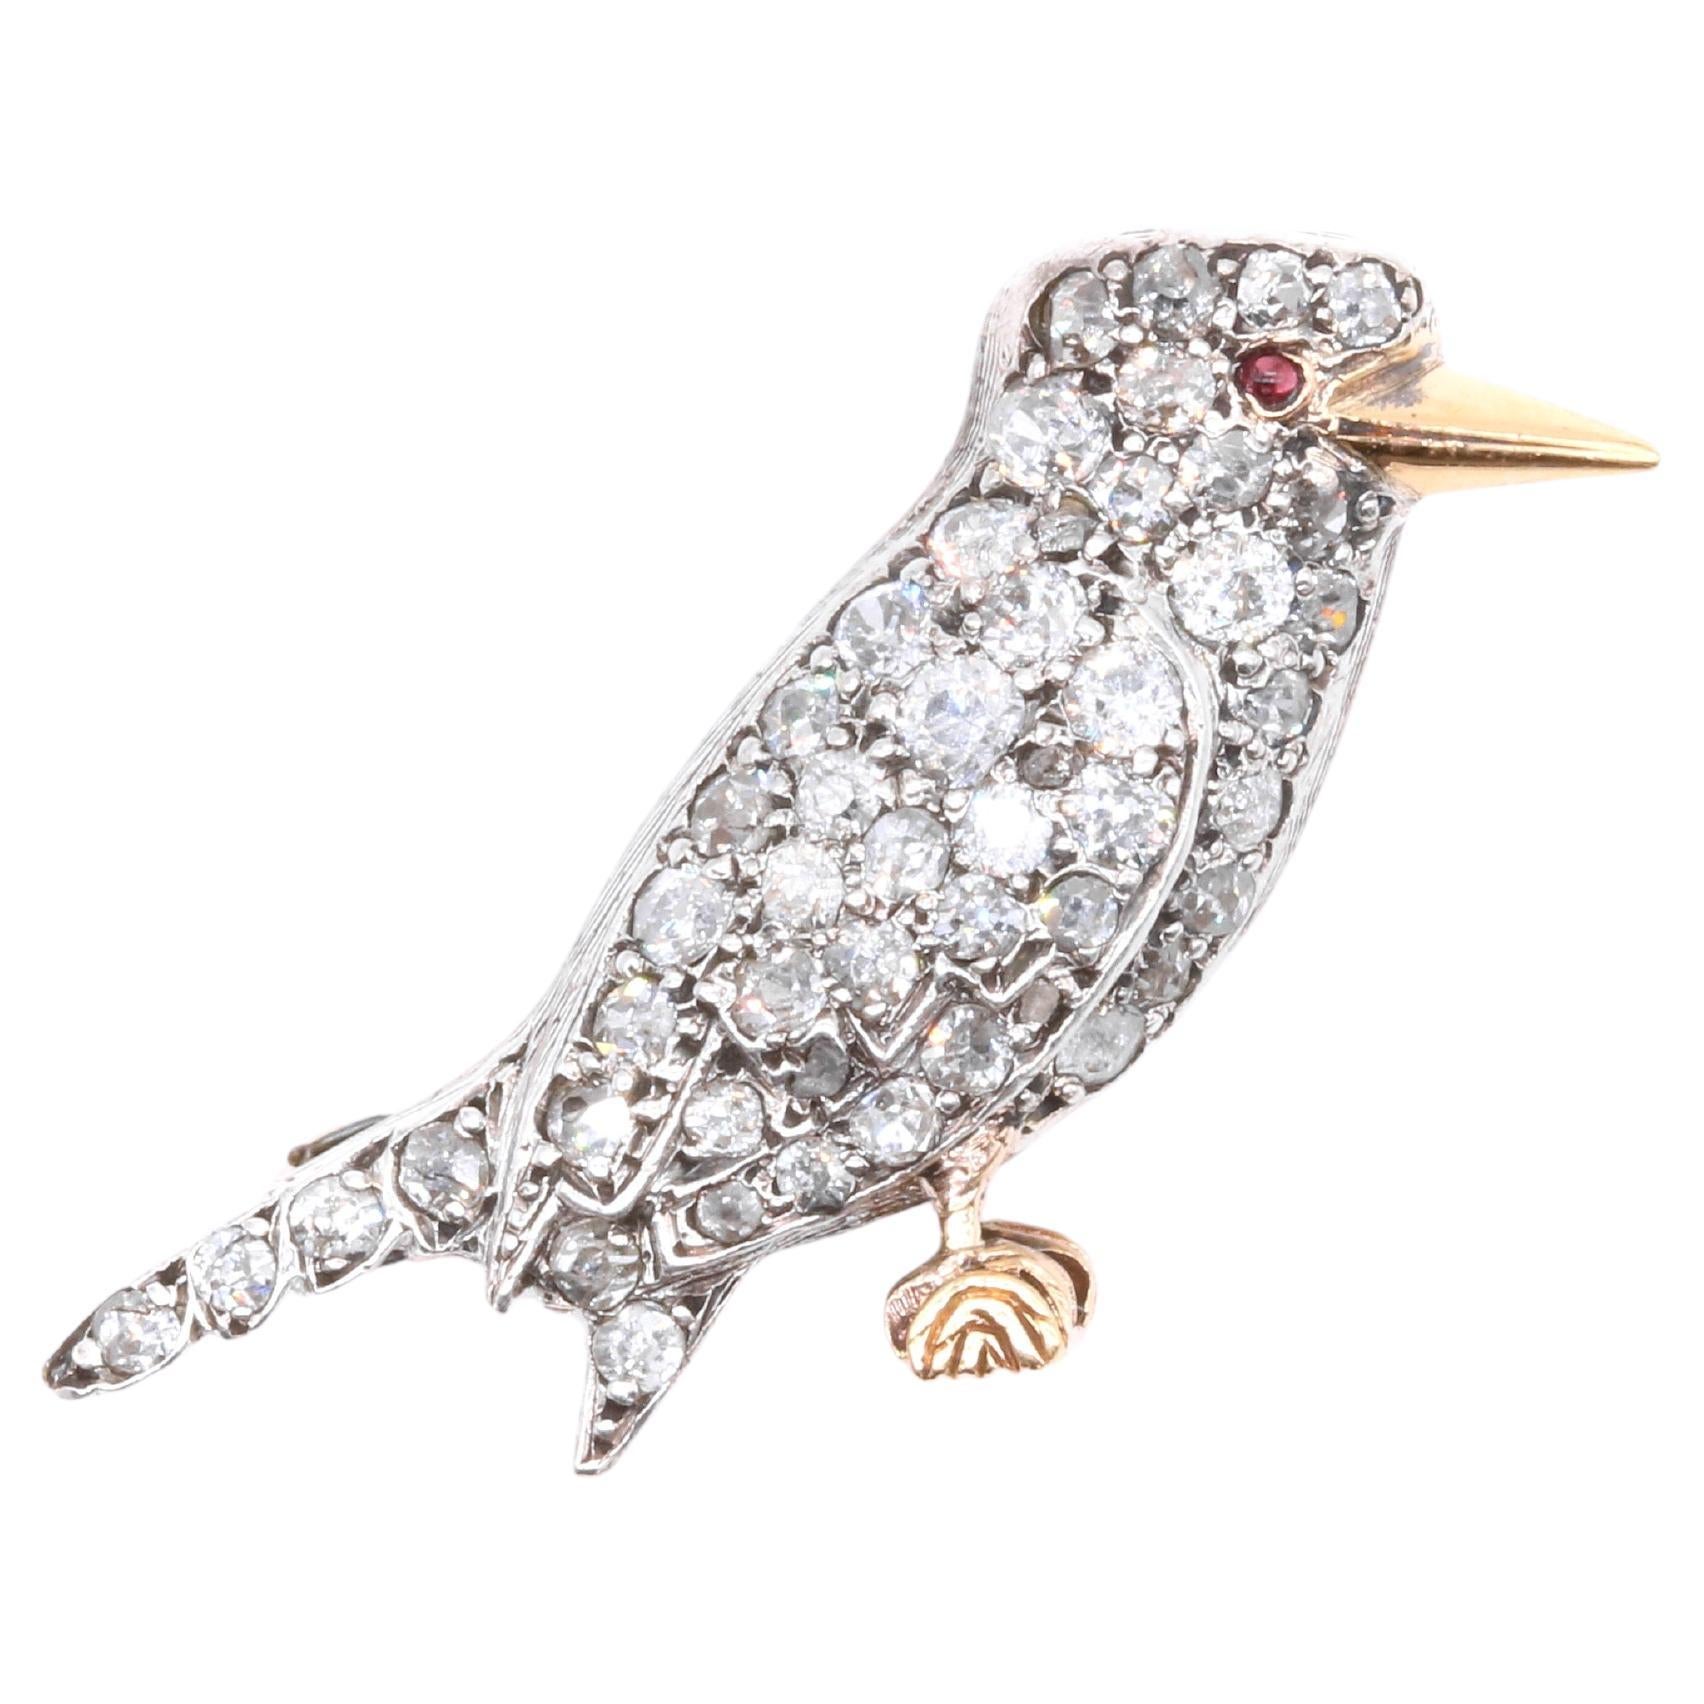 Broche victorienne ancienne en or 18 carats et argent avec diamants et rubis pour l'oiseau Kookaburra